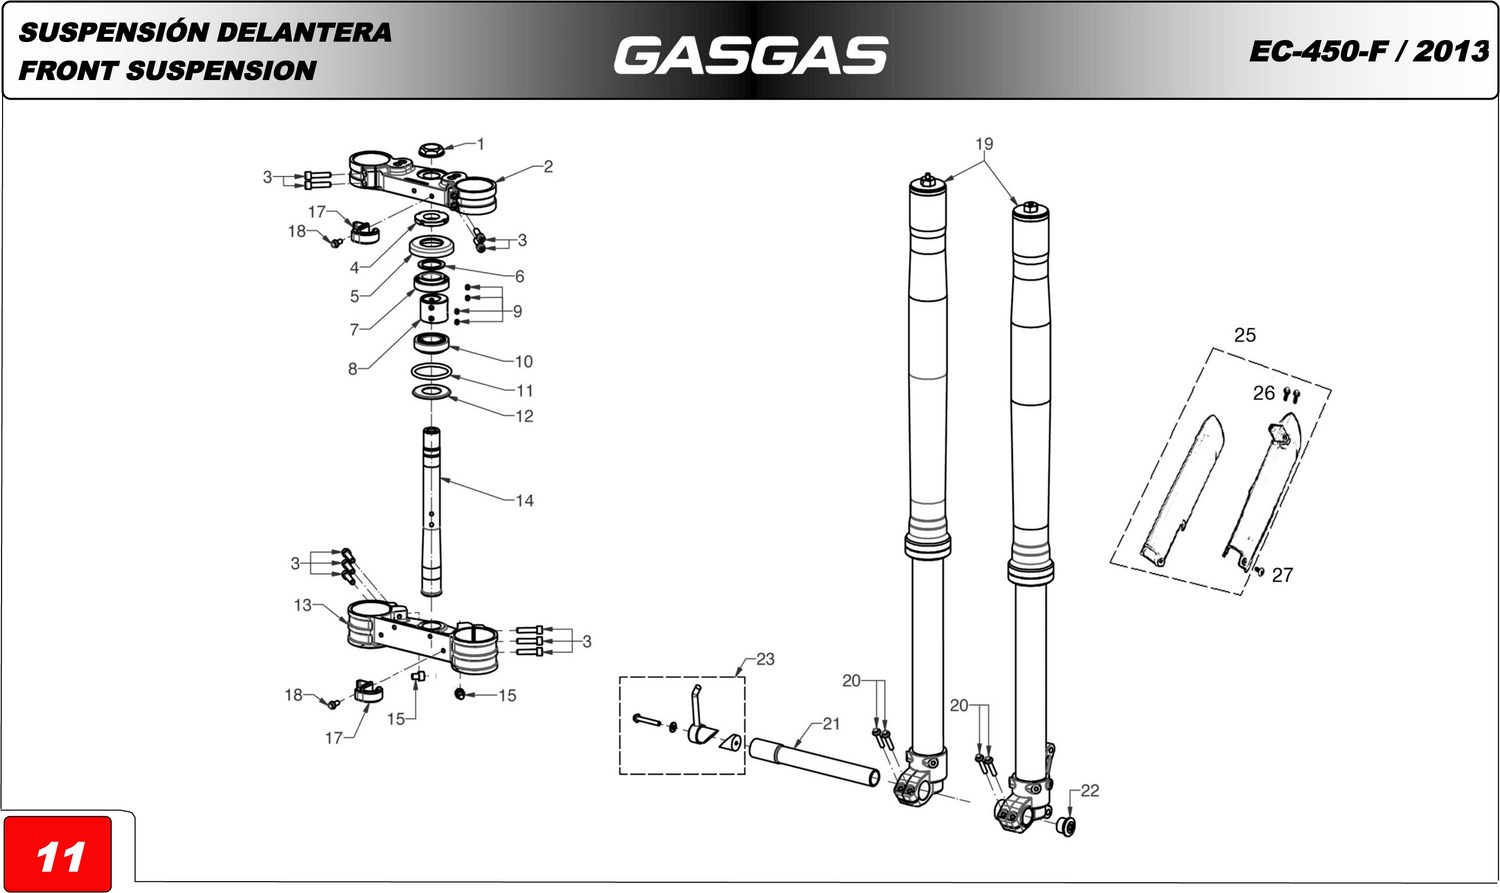 SUSPENSIÓN DELANTERA GAS GAS EC-450-F-CERVANTES 2013